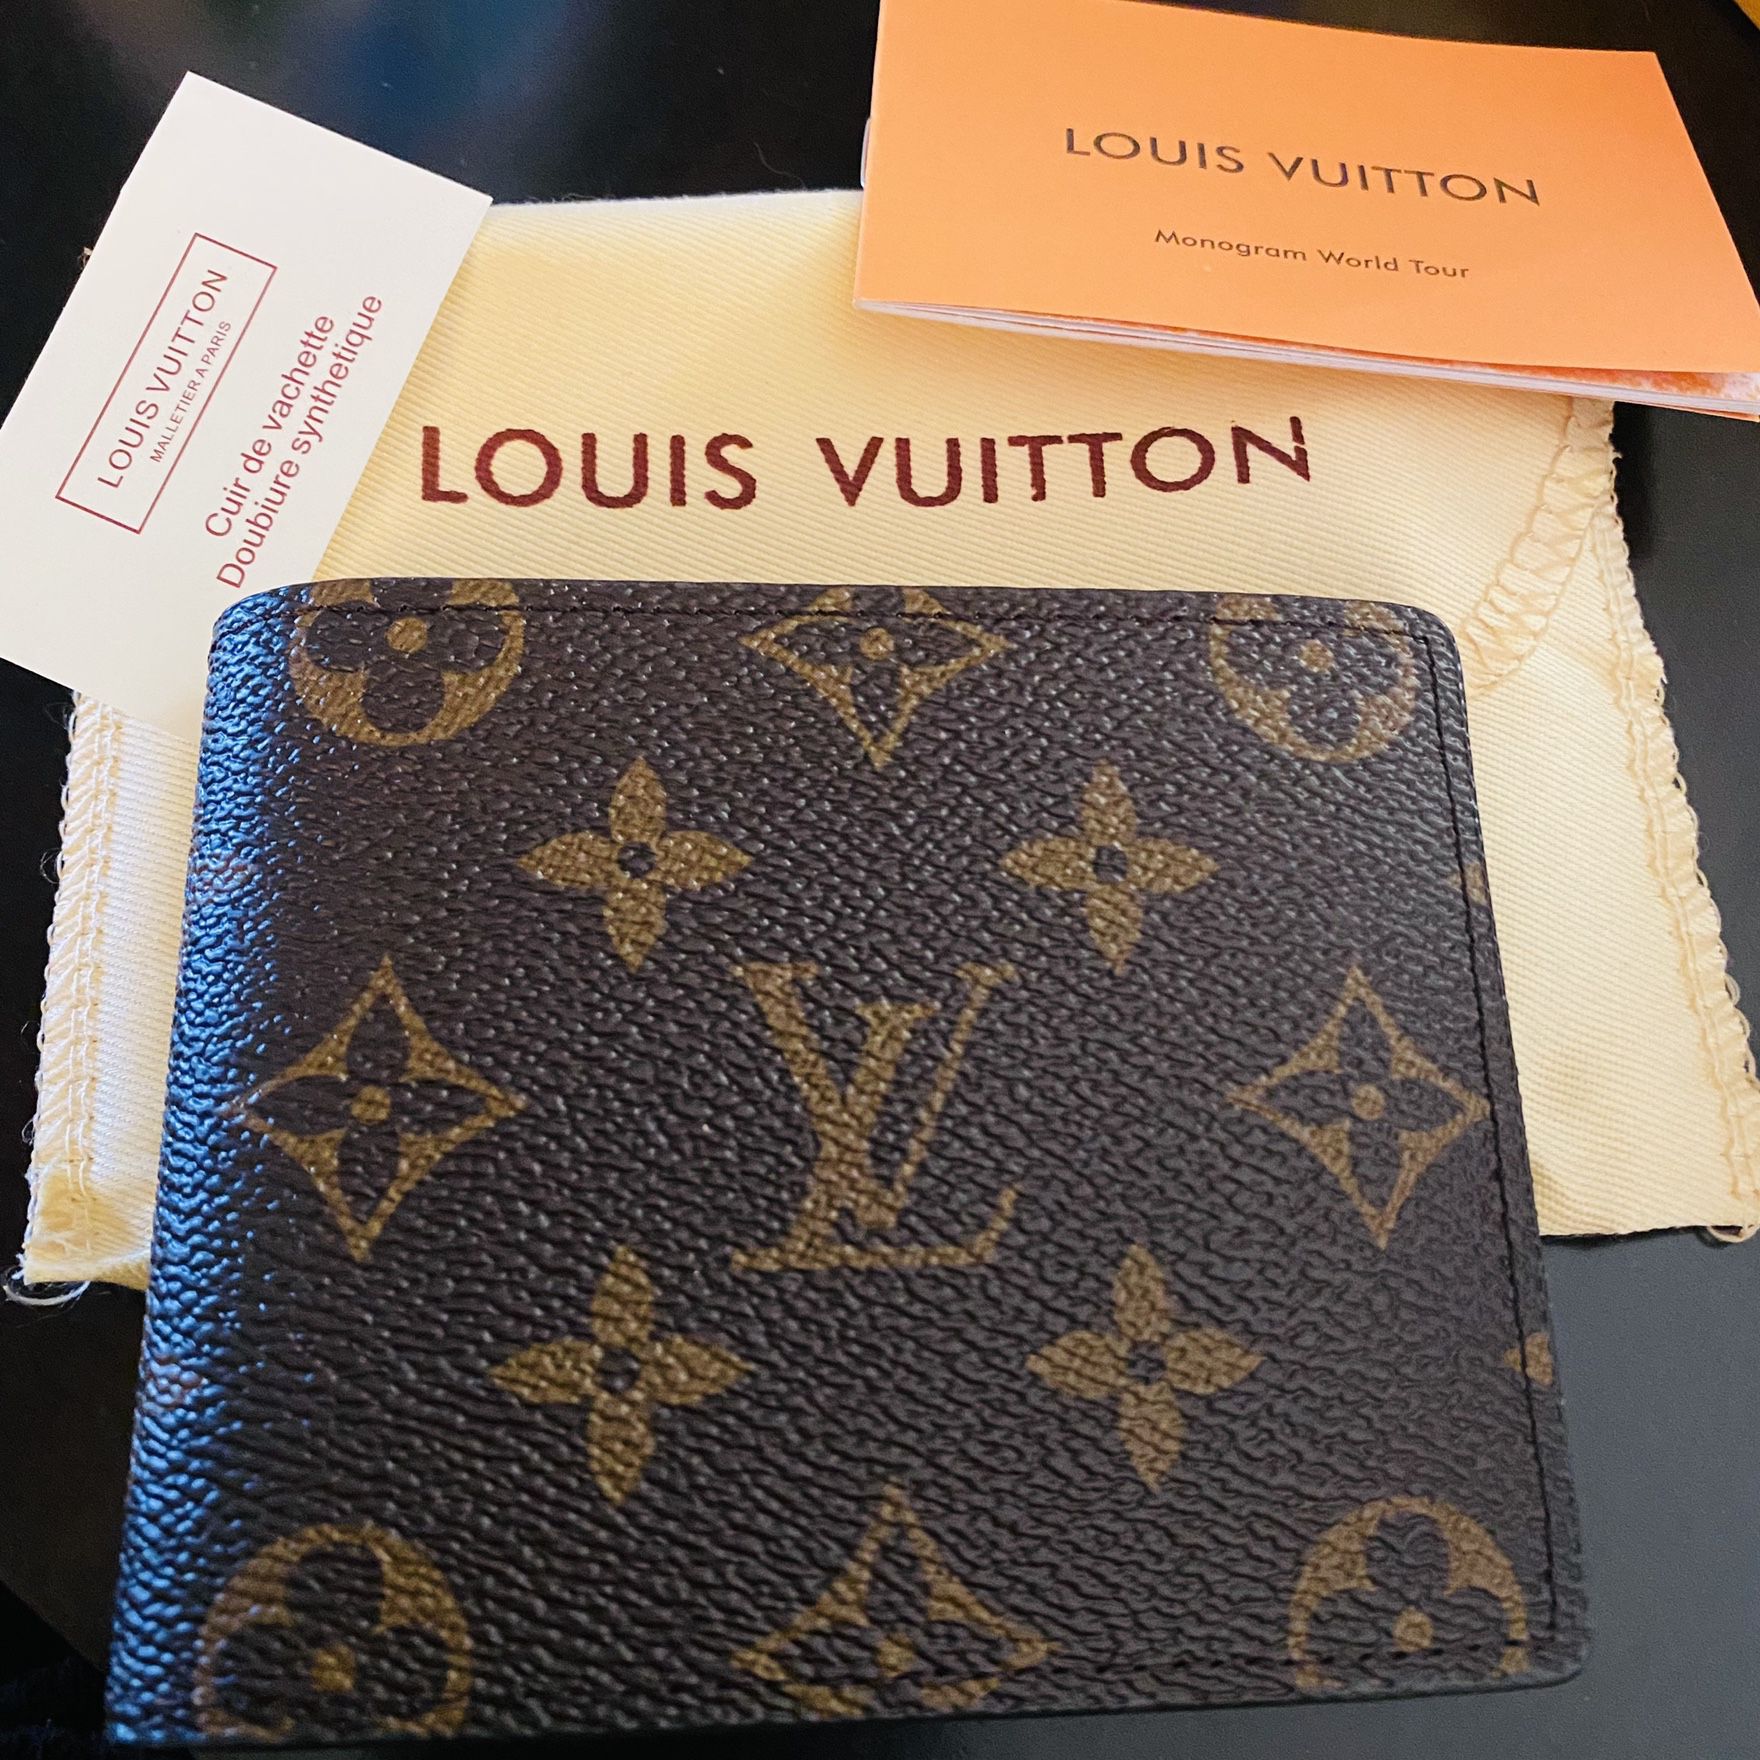 Louis Vuitton Malletier Jobs, Careers